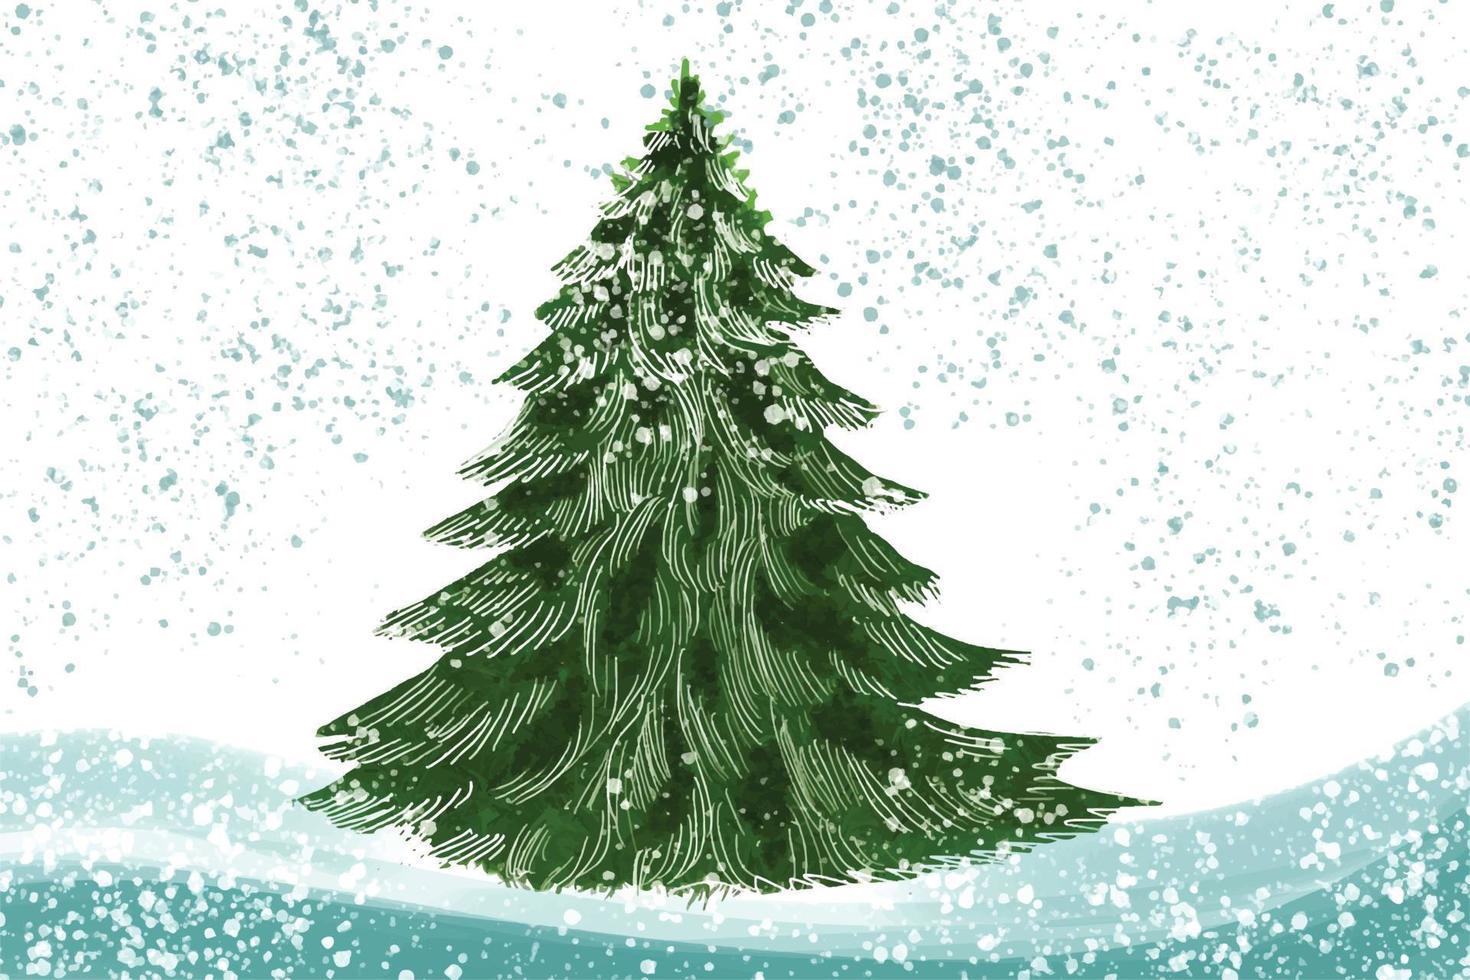 jul vinter- landskap av kall väder jul träd kort bakgrund vektor